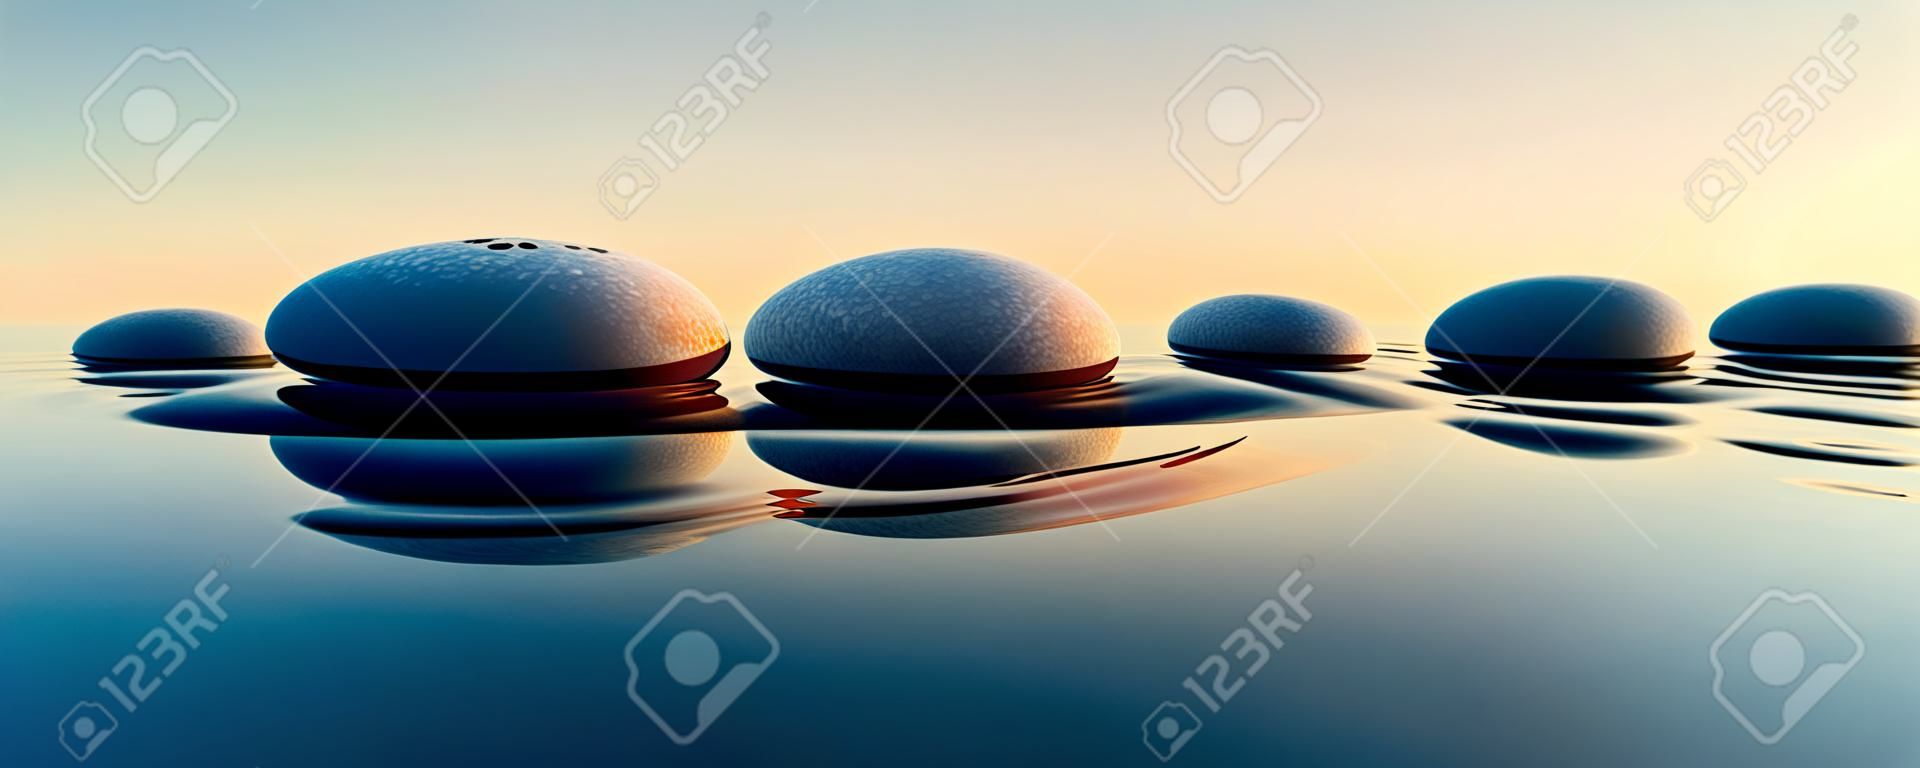 Linha de pedras em água calma no amplo conceito oceânico de meditação - ilustração 3D